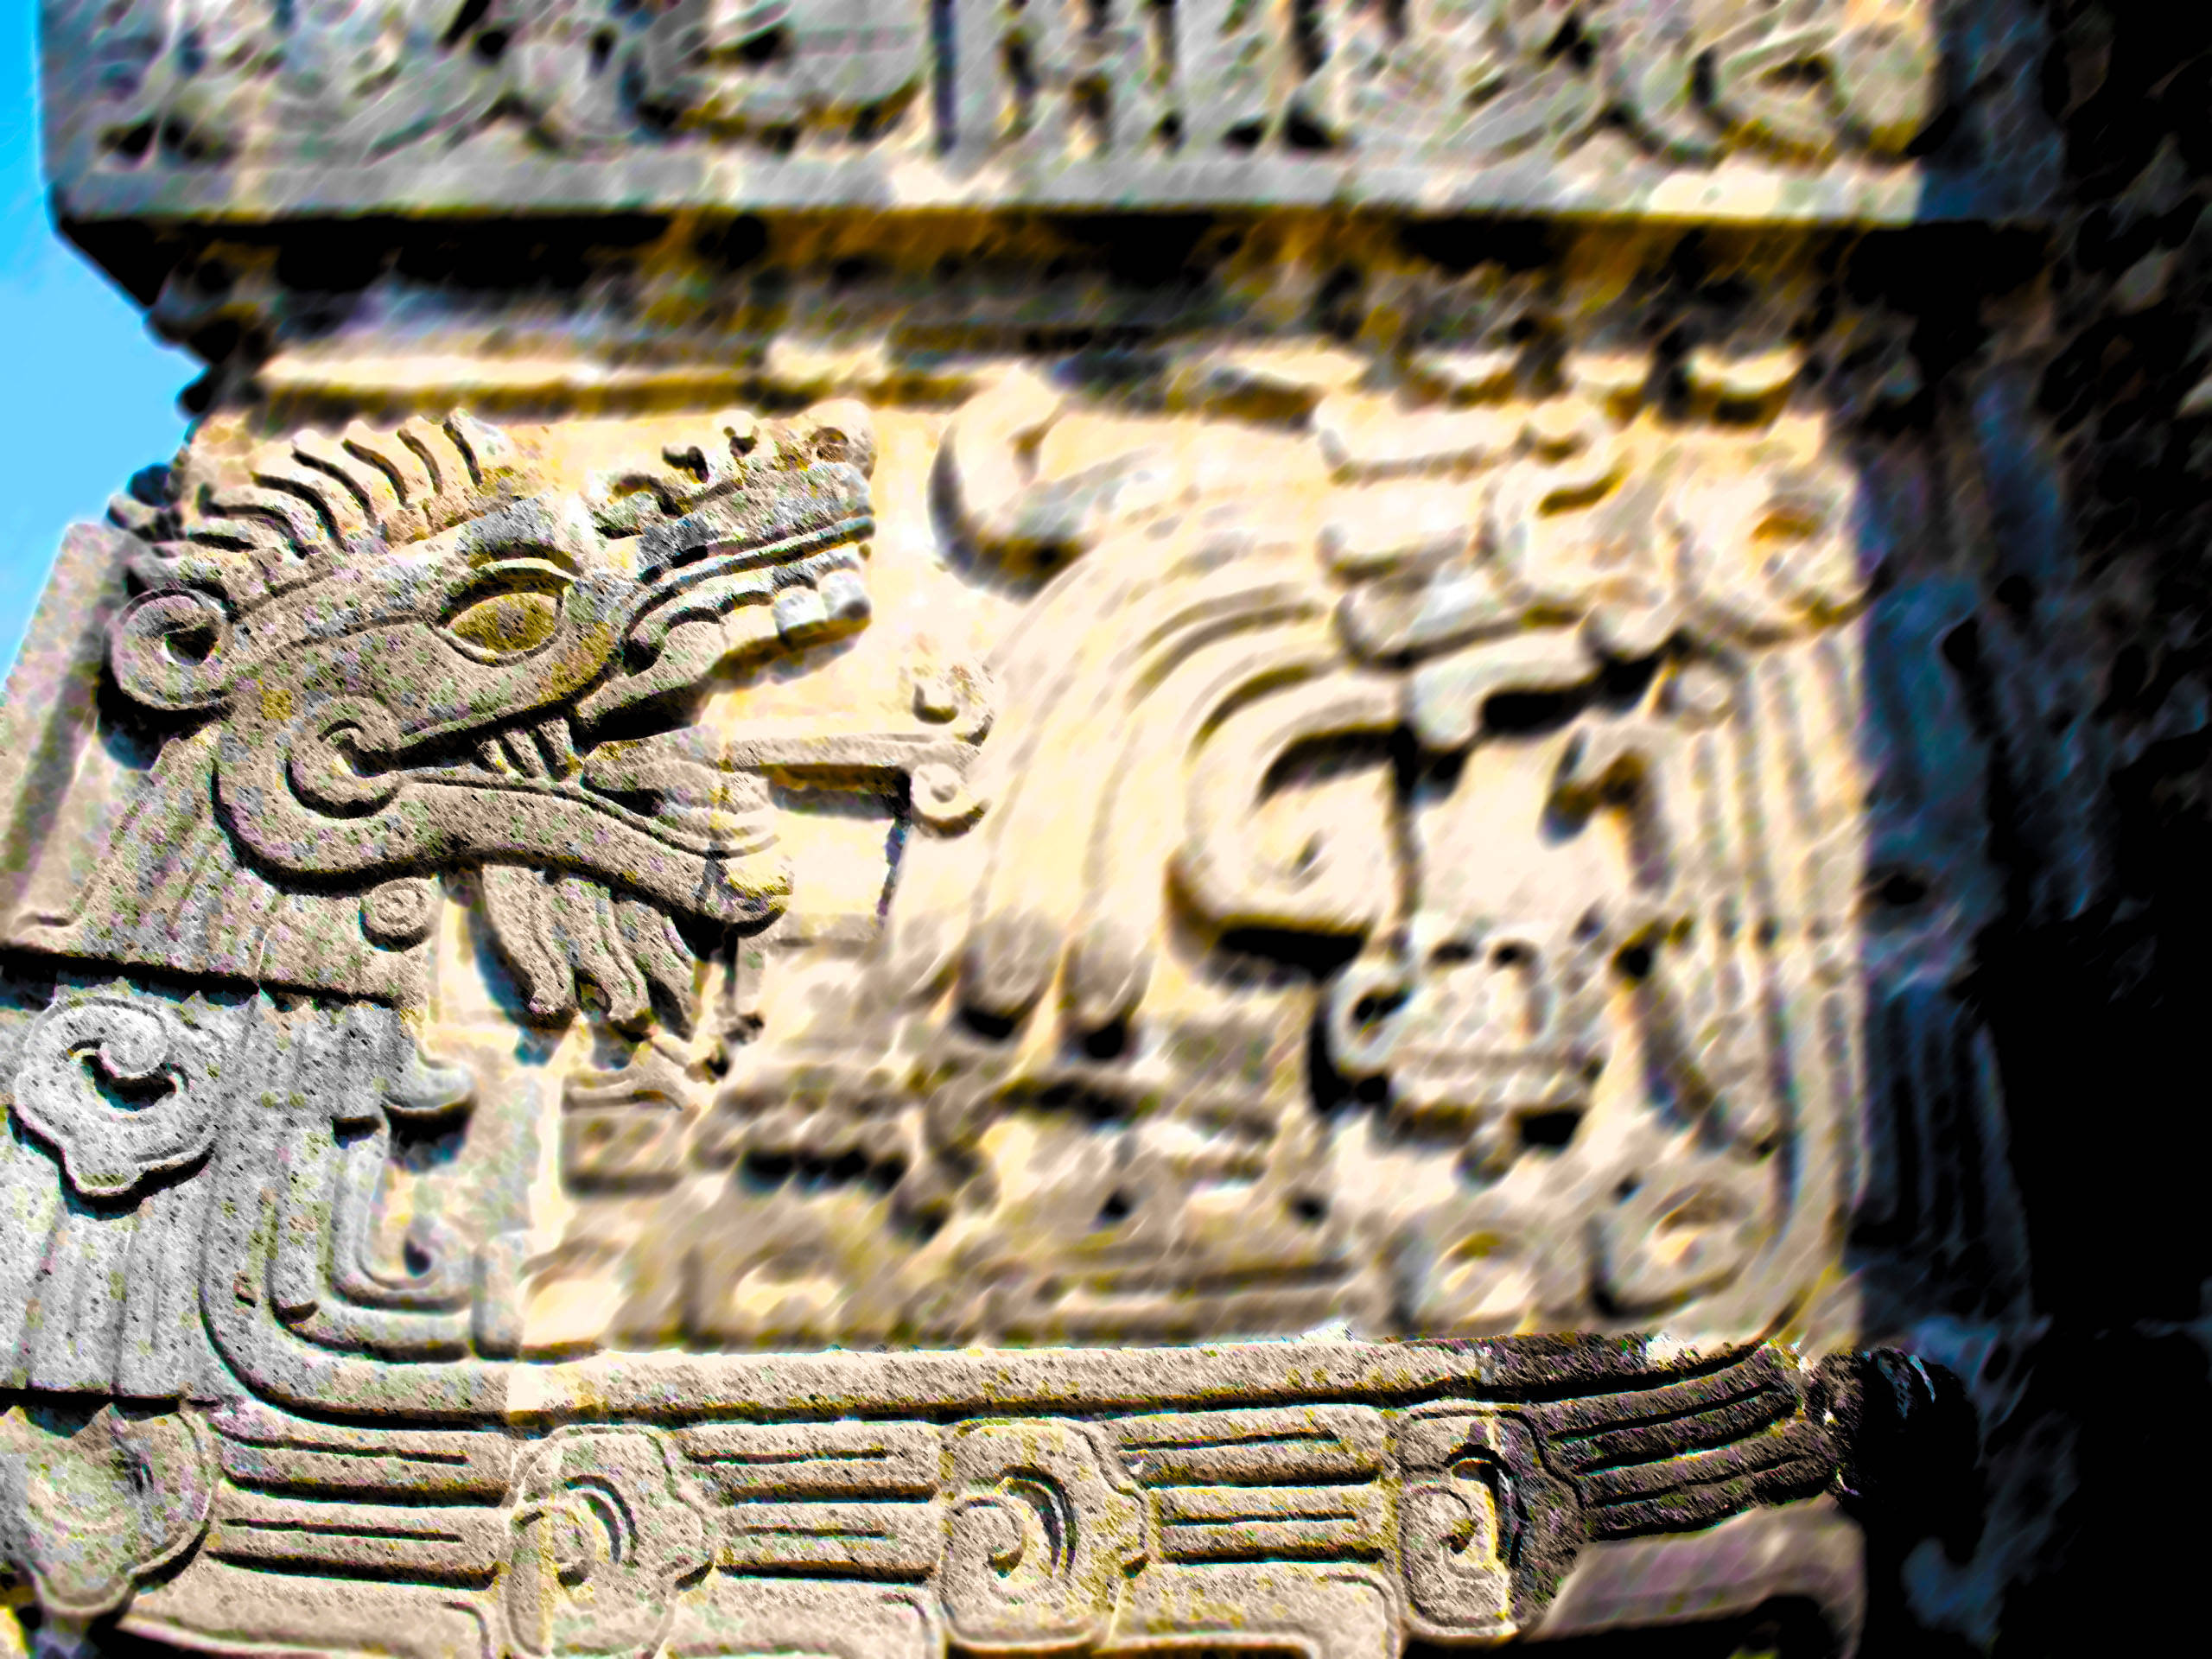 HD wallpaper quetzalcoatl women weavers travel cultures mother  weaving  Wallpaper Flare